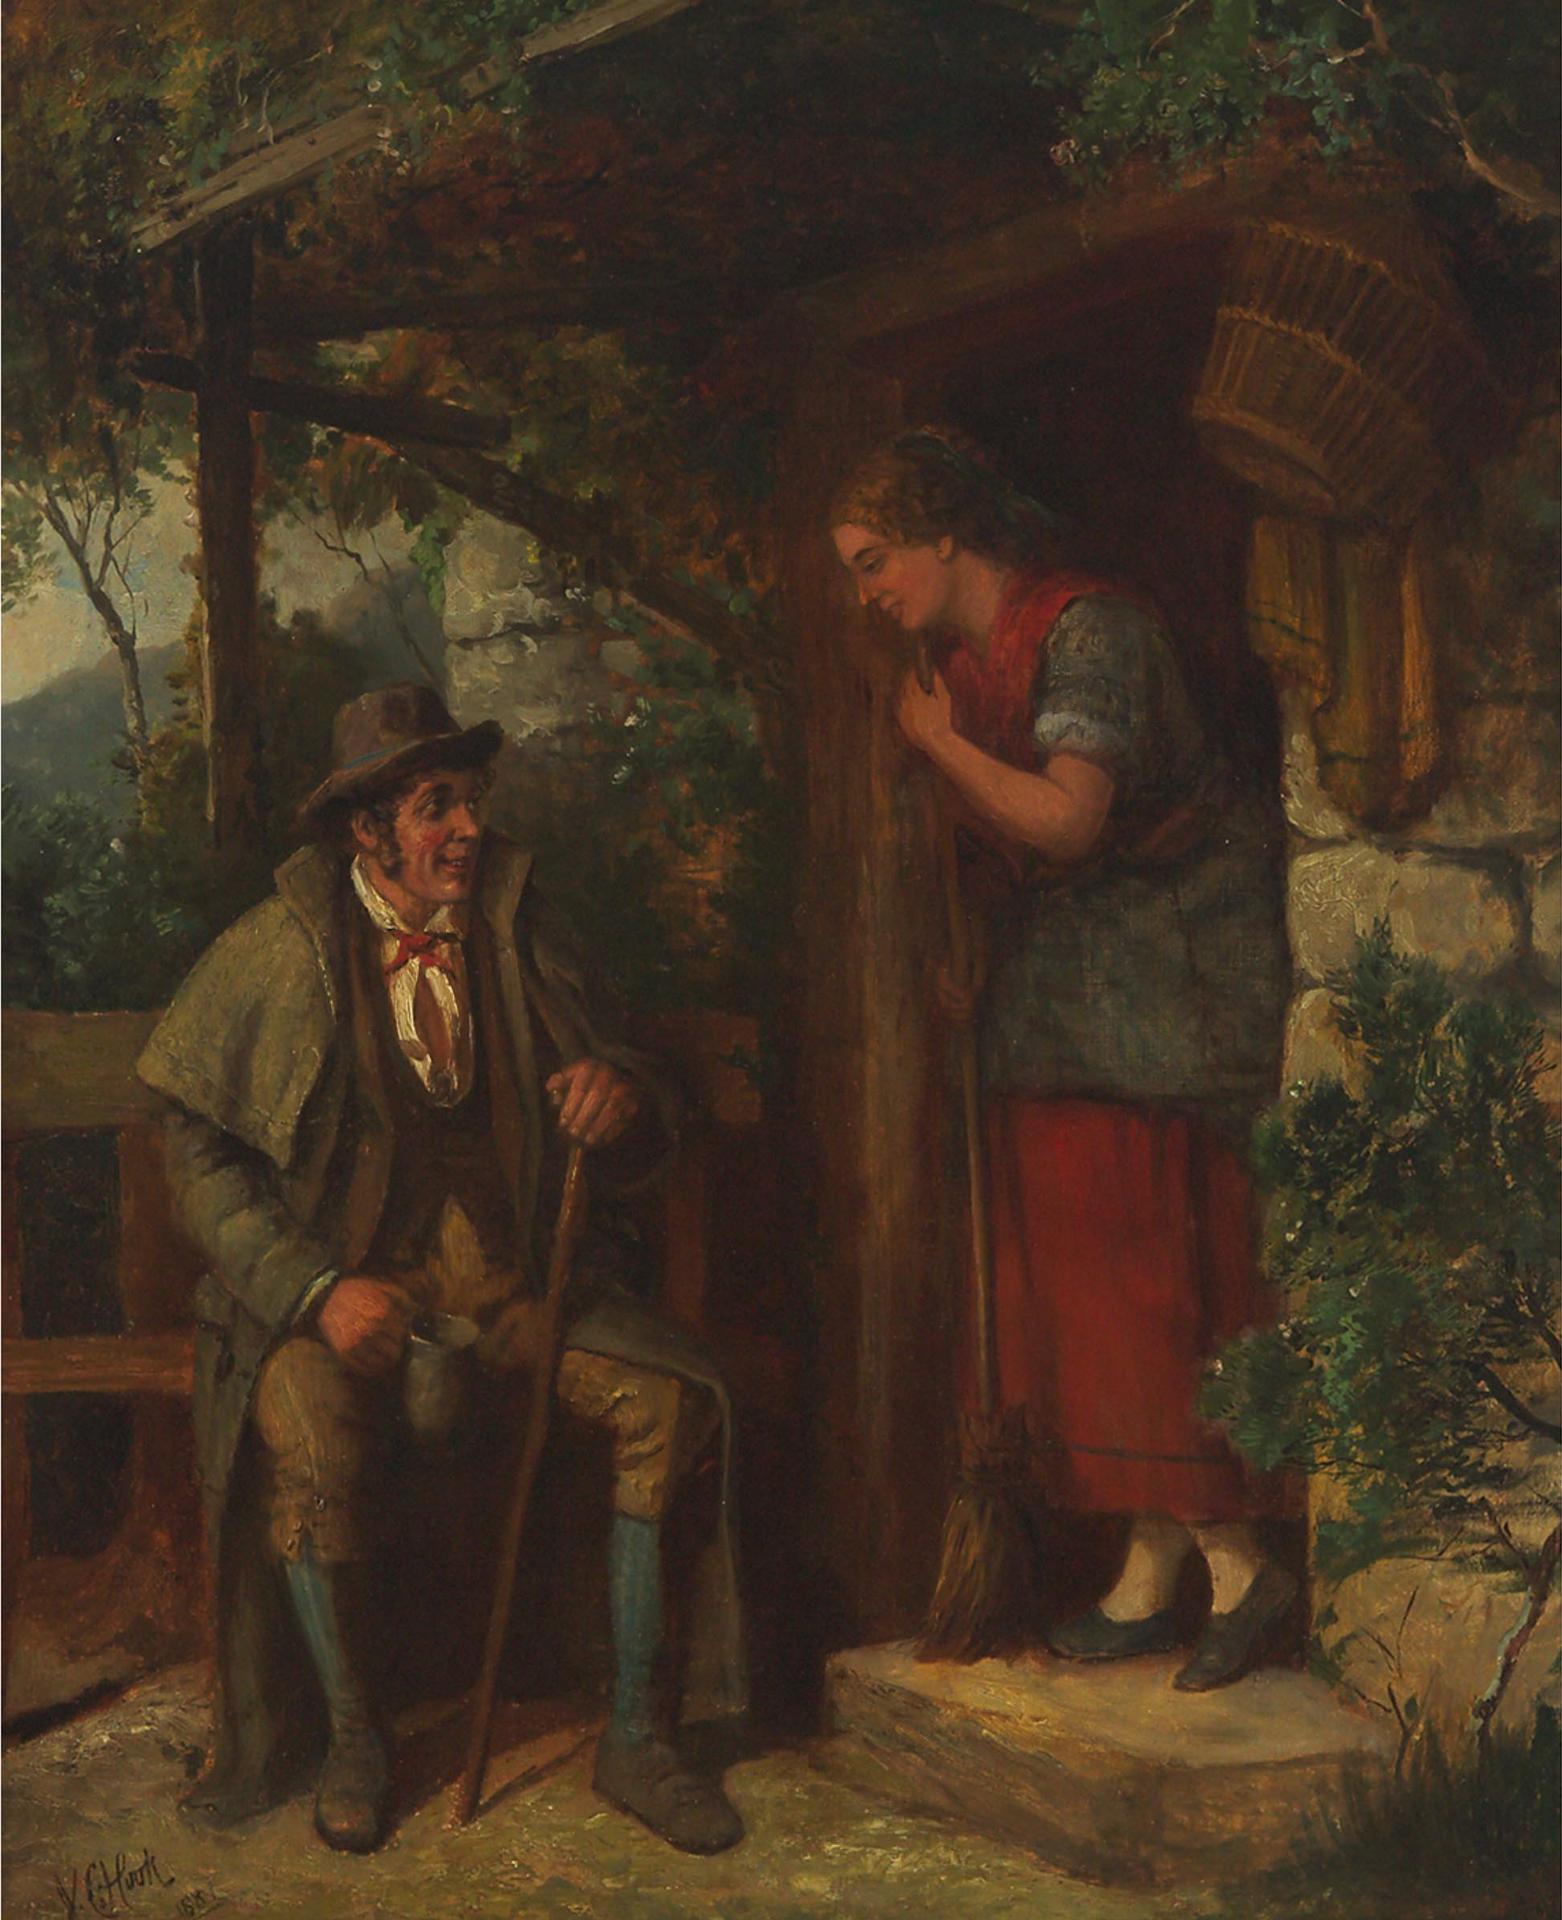 James Clarke Hook (1819-1907) - Greeting A Gentleman Visitor At The Door, 1881